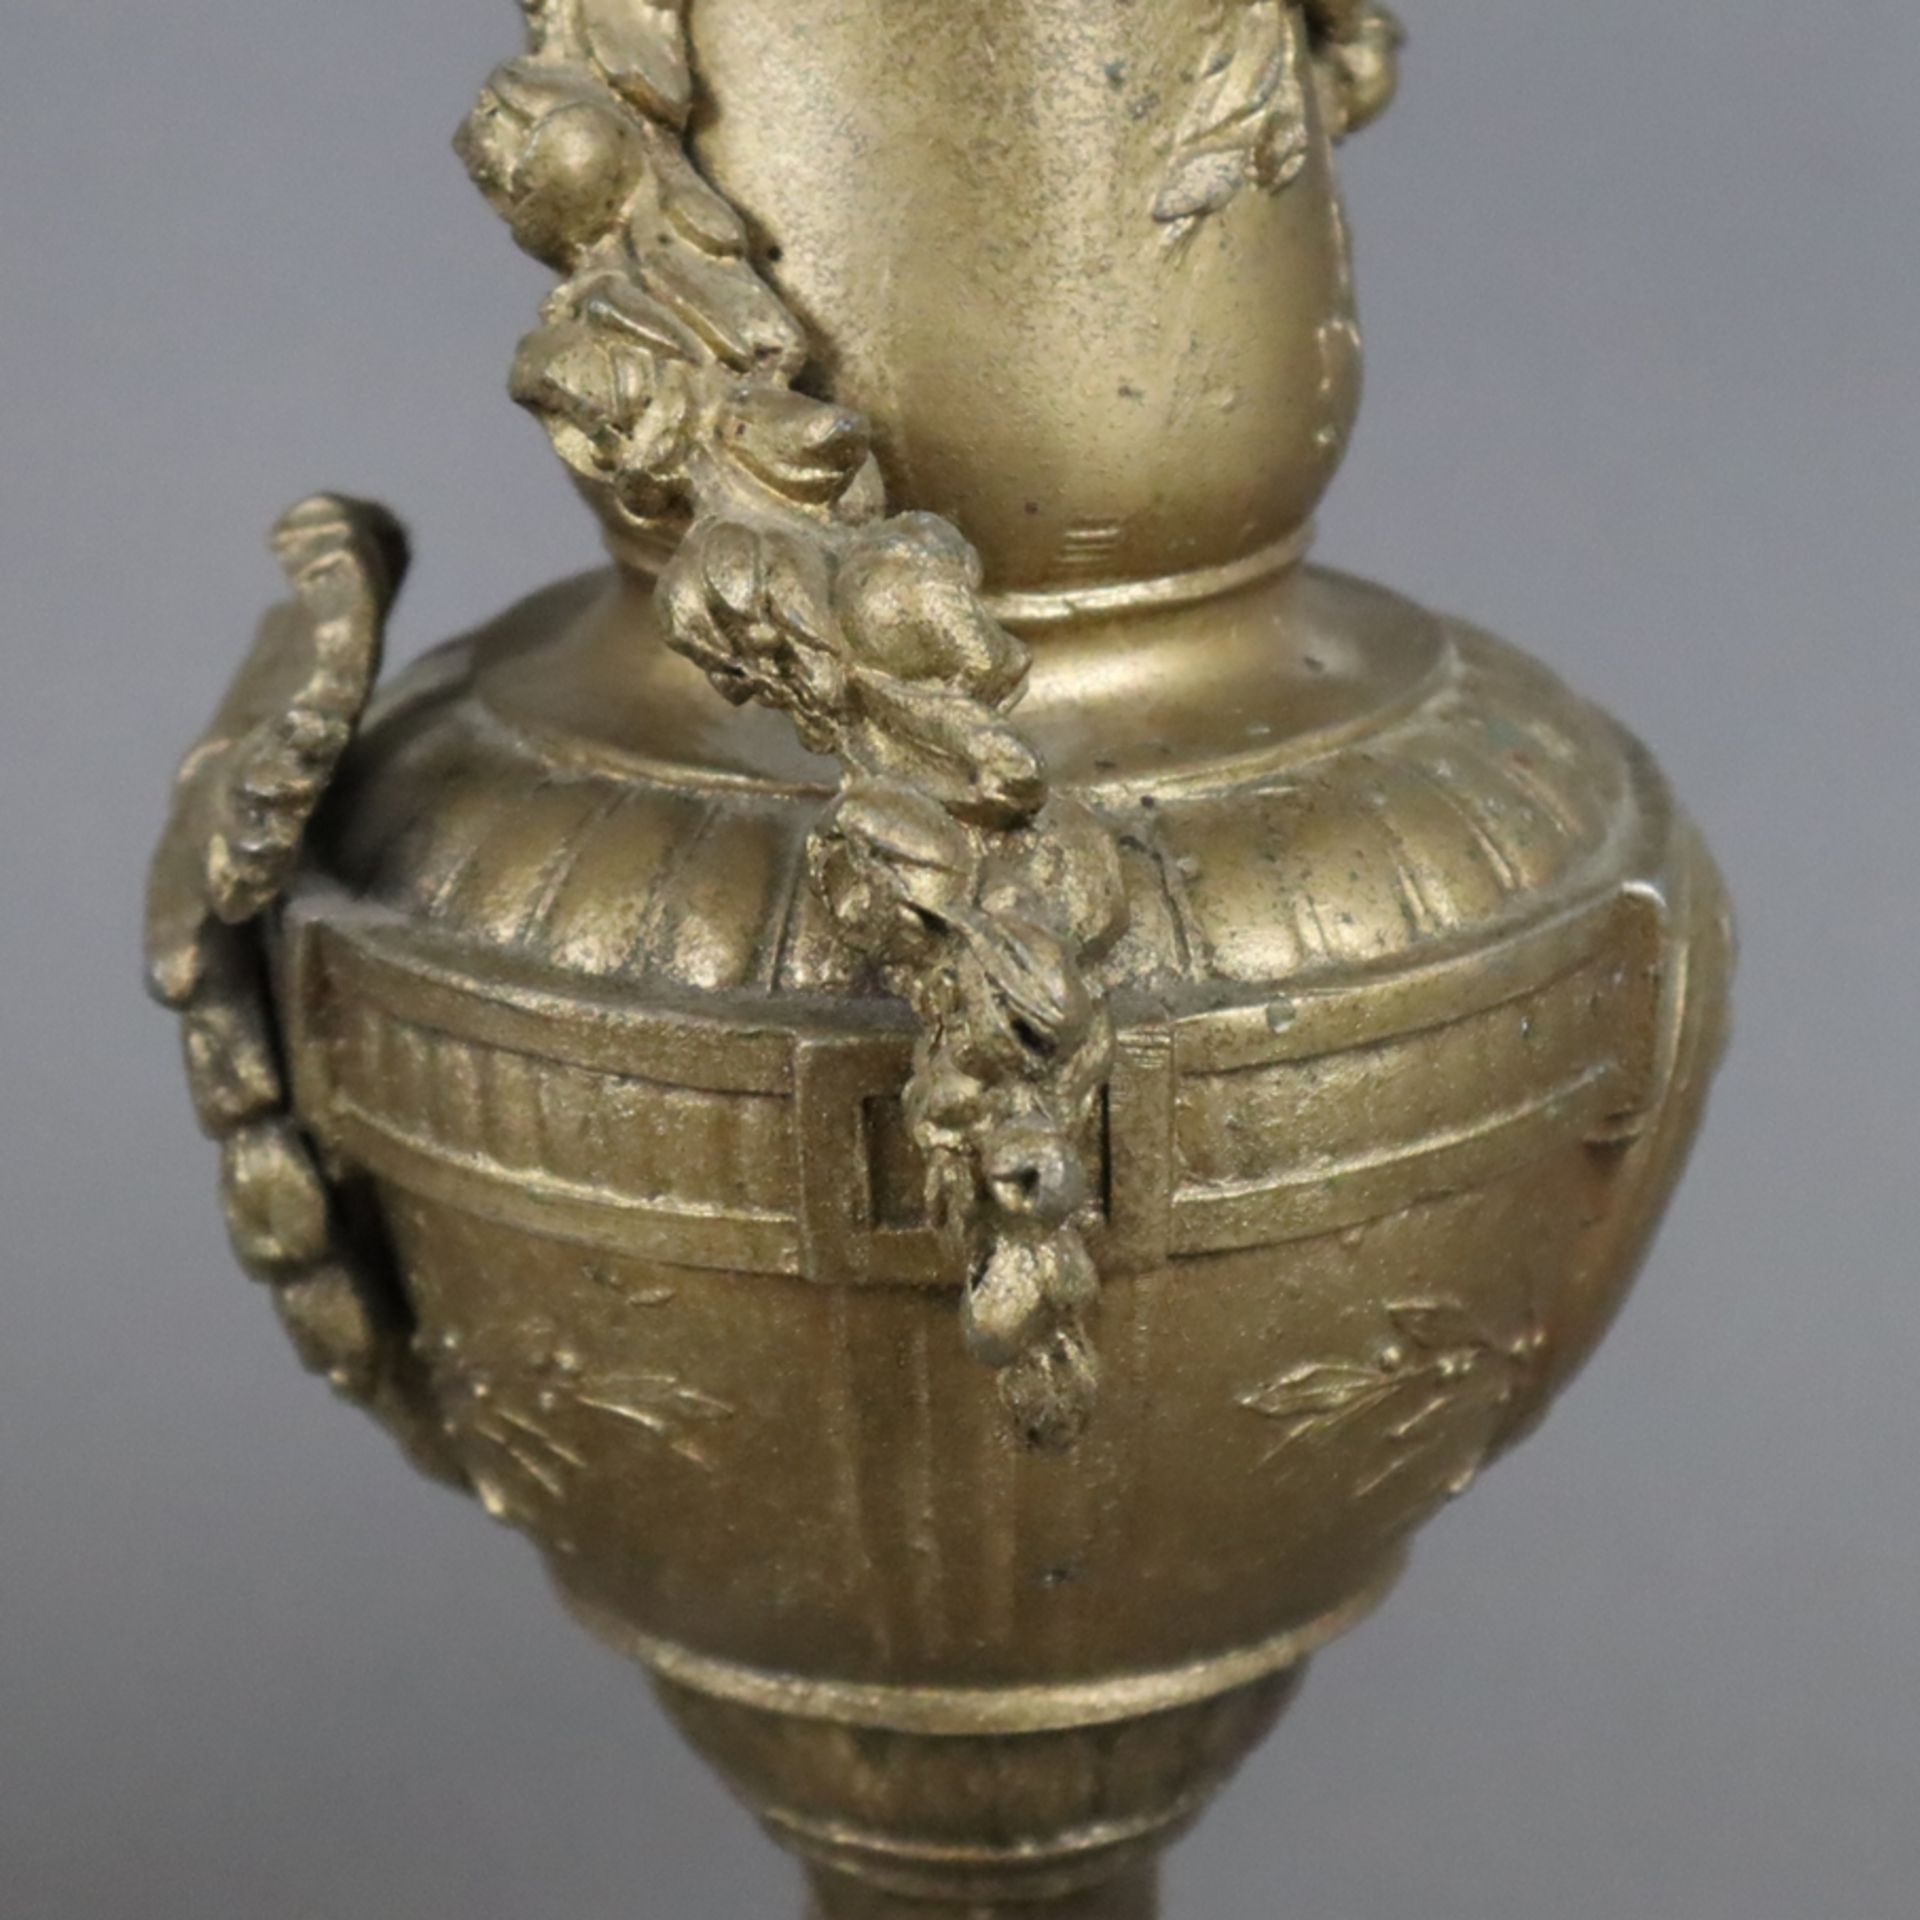 Paar Kaminvasen - Metallkorpus, goldfarben gefasst, balusterförmige Vasen, Reliefdekor im klassizis - Bild 5 aus 7